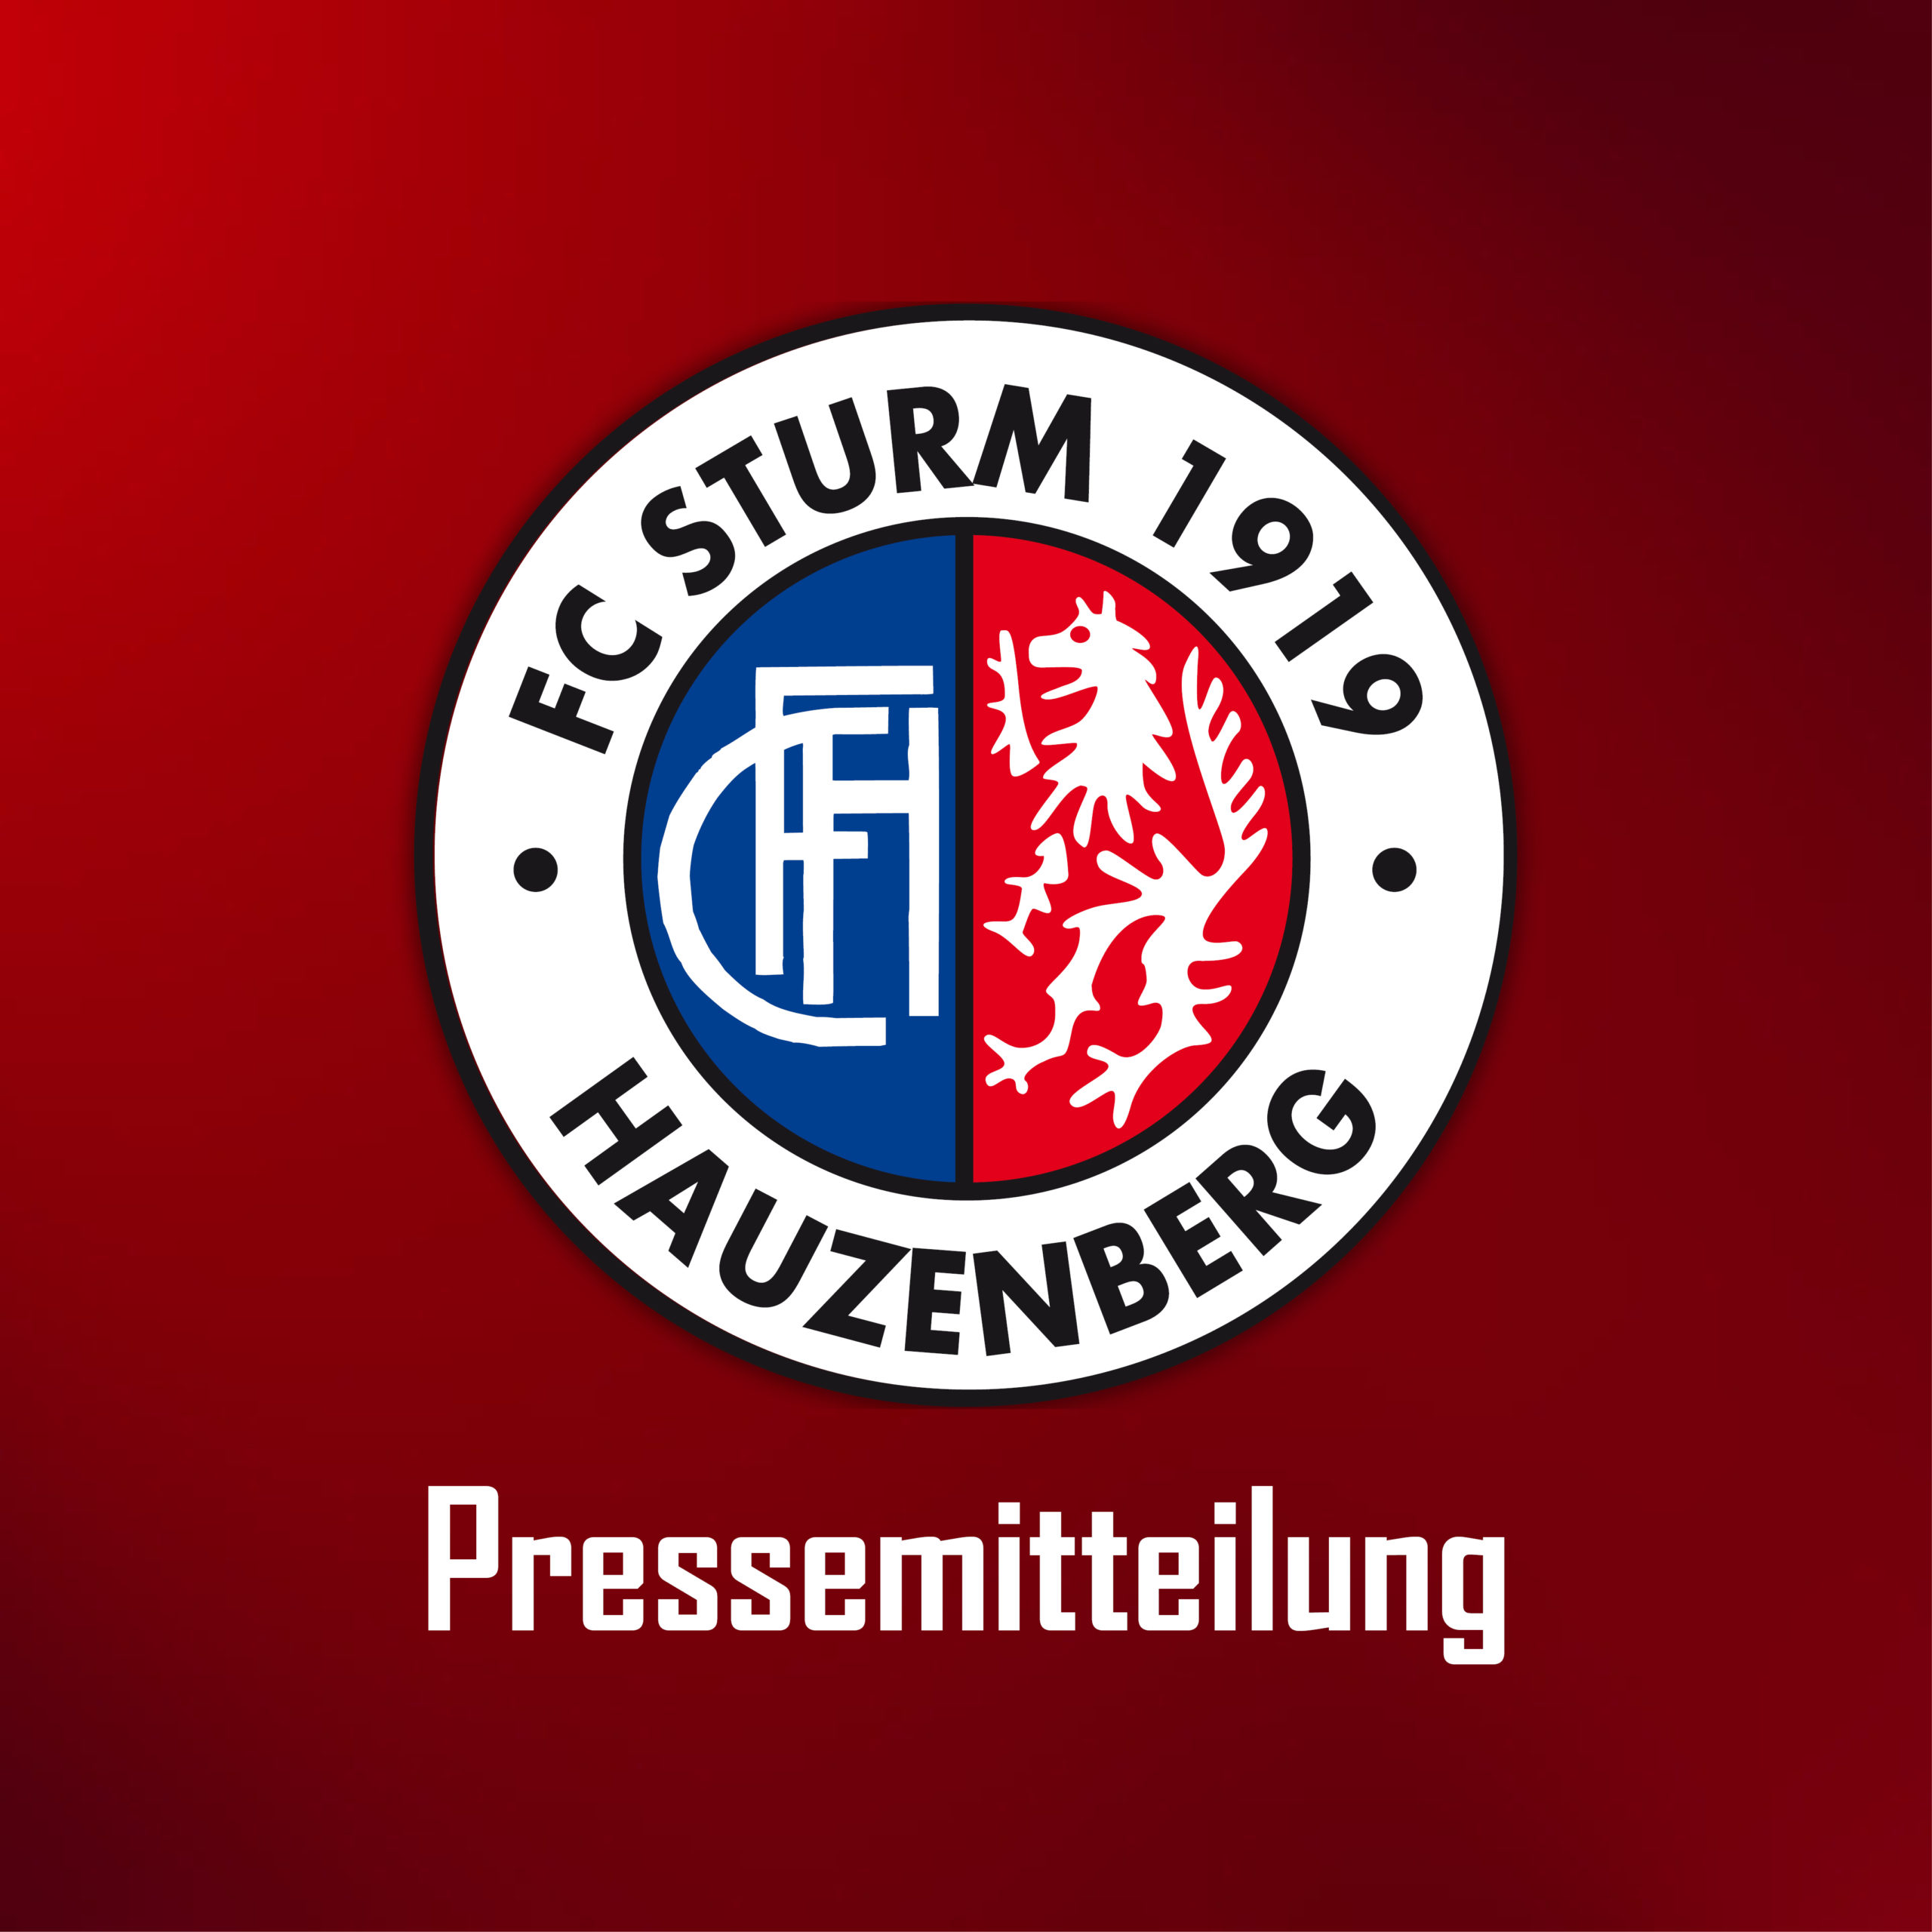 FC Sturm stellt Weichen für kommende Saison. Trainer Schwarz und großer Teil des Stammpersonals verlängert bis 2024 – Alex Geiger beendet Traineramt zum Ende der Saison